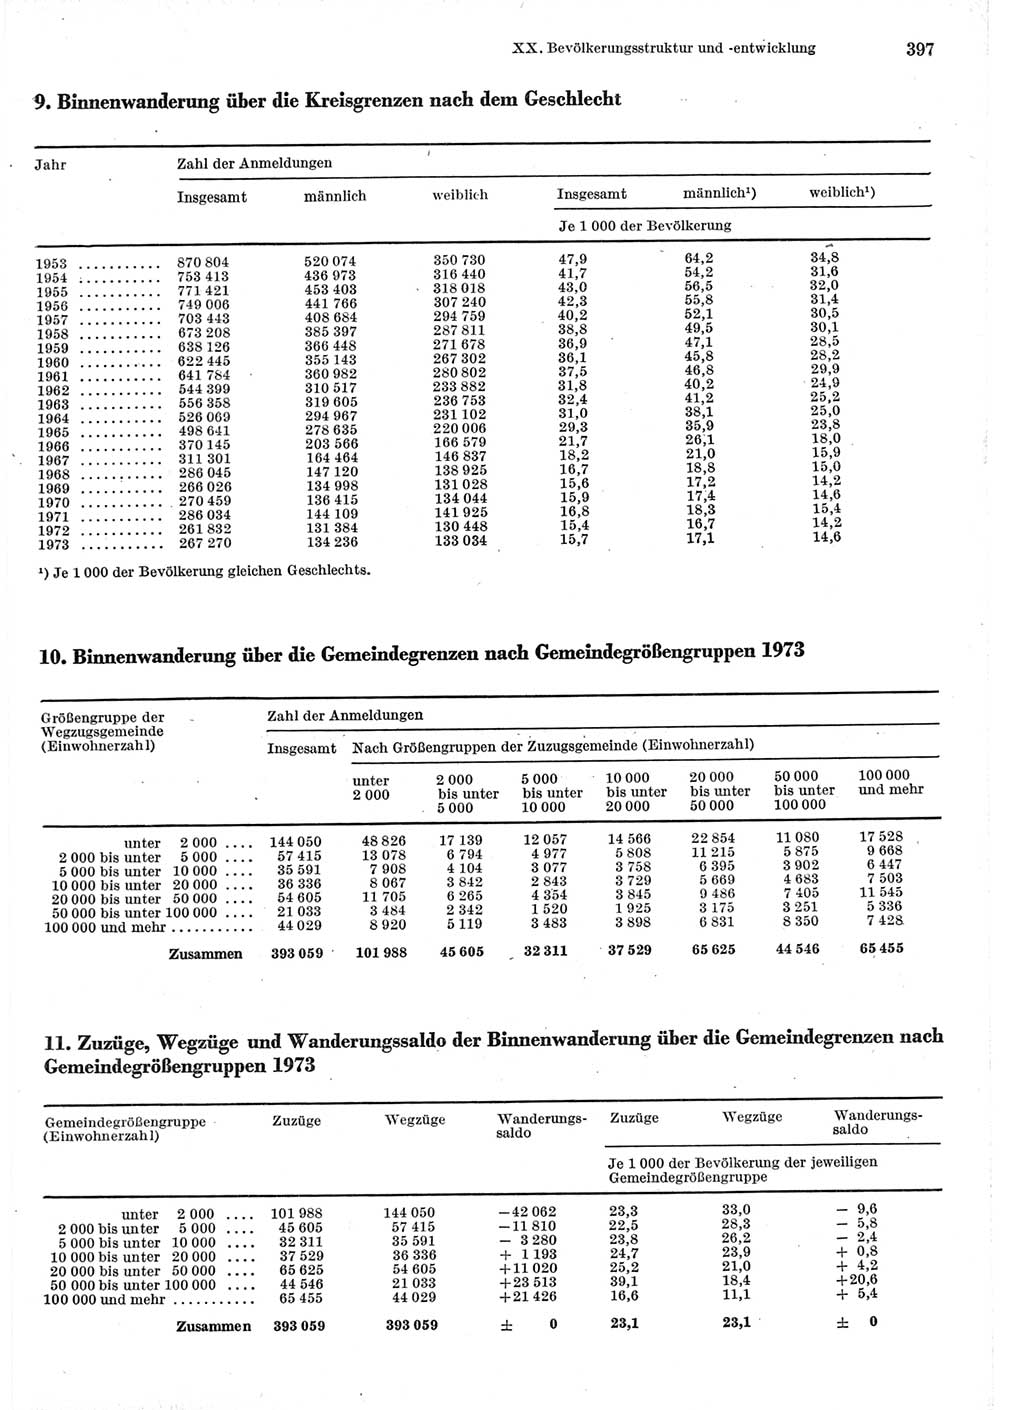 Statistisches Jahrbuch der Deutschen Demokratischen Republik (DDR) 1975, Seite 397 (Stat. Jb. DDR 1975, S. 397)